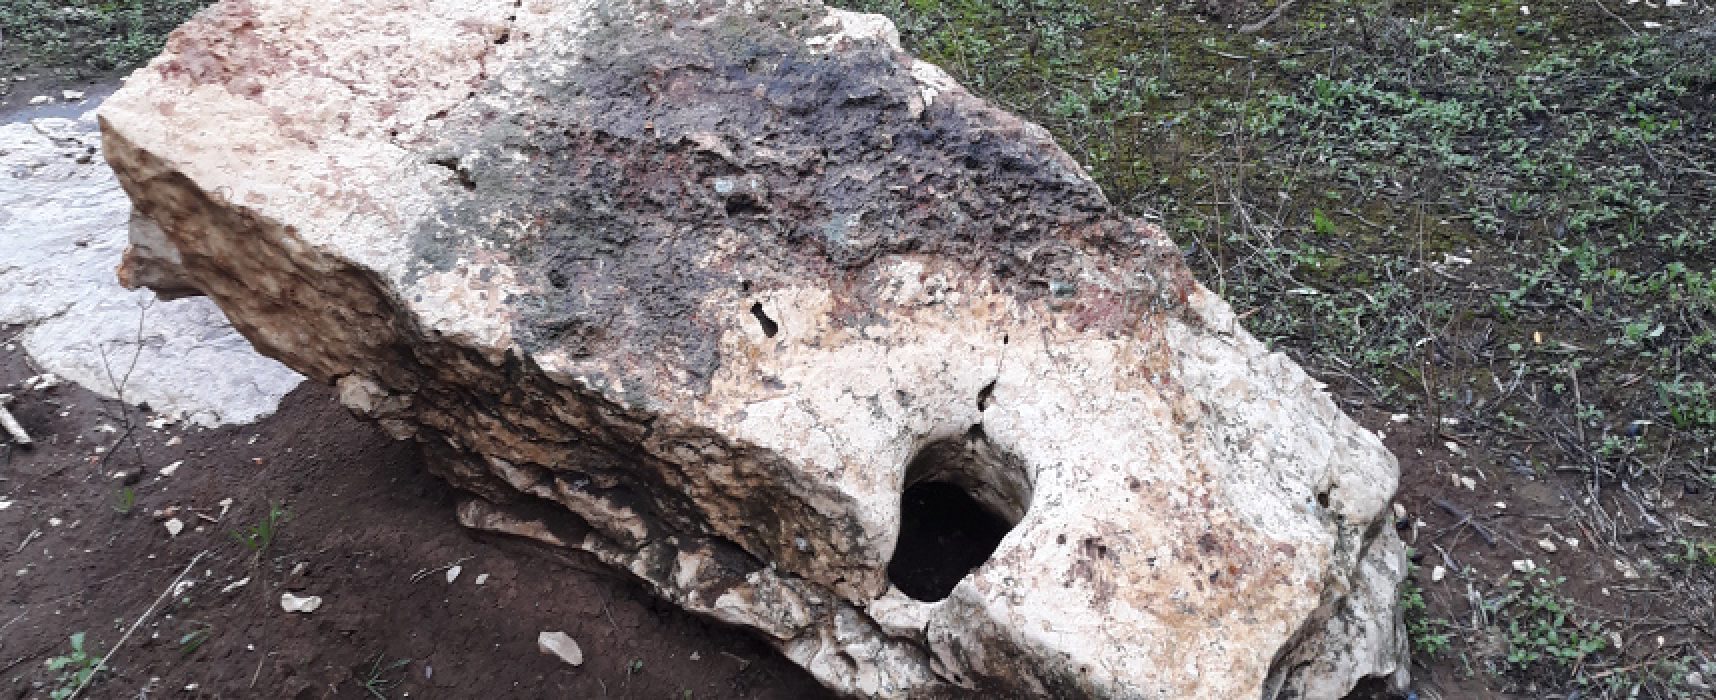 Menhir in Contrada Santa Croce distrutto, la denuncia di un lettore